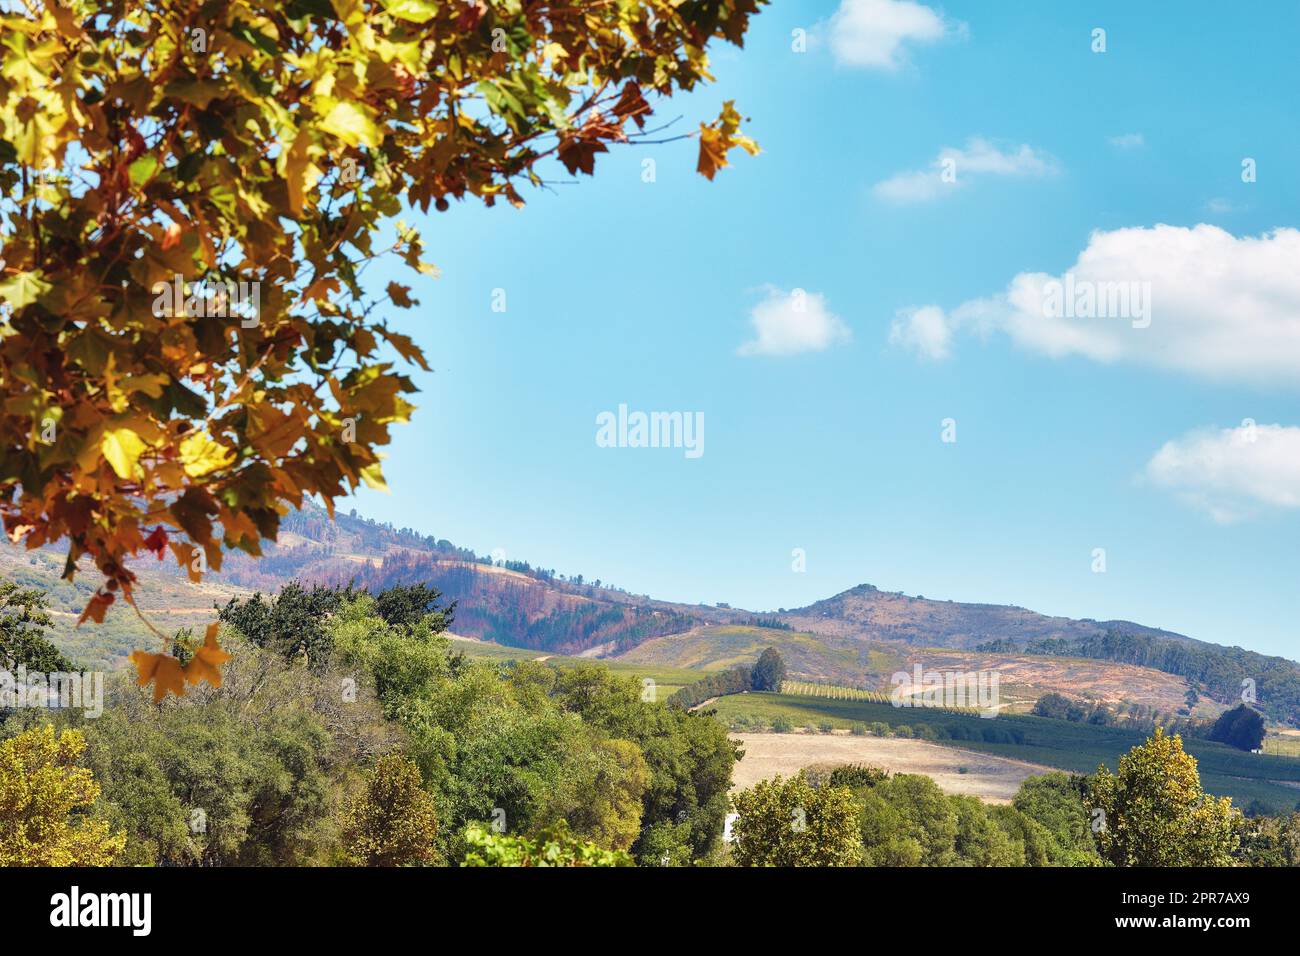 Herbstblätter und lebendige Bäume auf dem Berg in Südafrika, Westkap. Landschaftsblick auf natürliches Gelände mit wolkenlosem blauen Himmel und einheimischer Flora. Landwirtschaft mit Weinanbaufläche Stockfoto